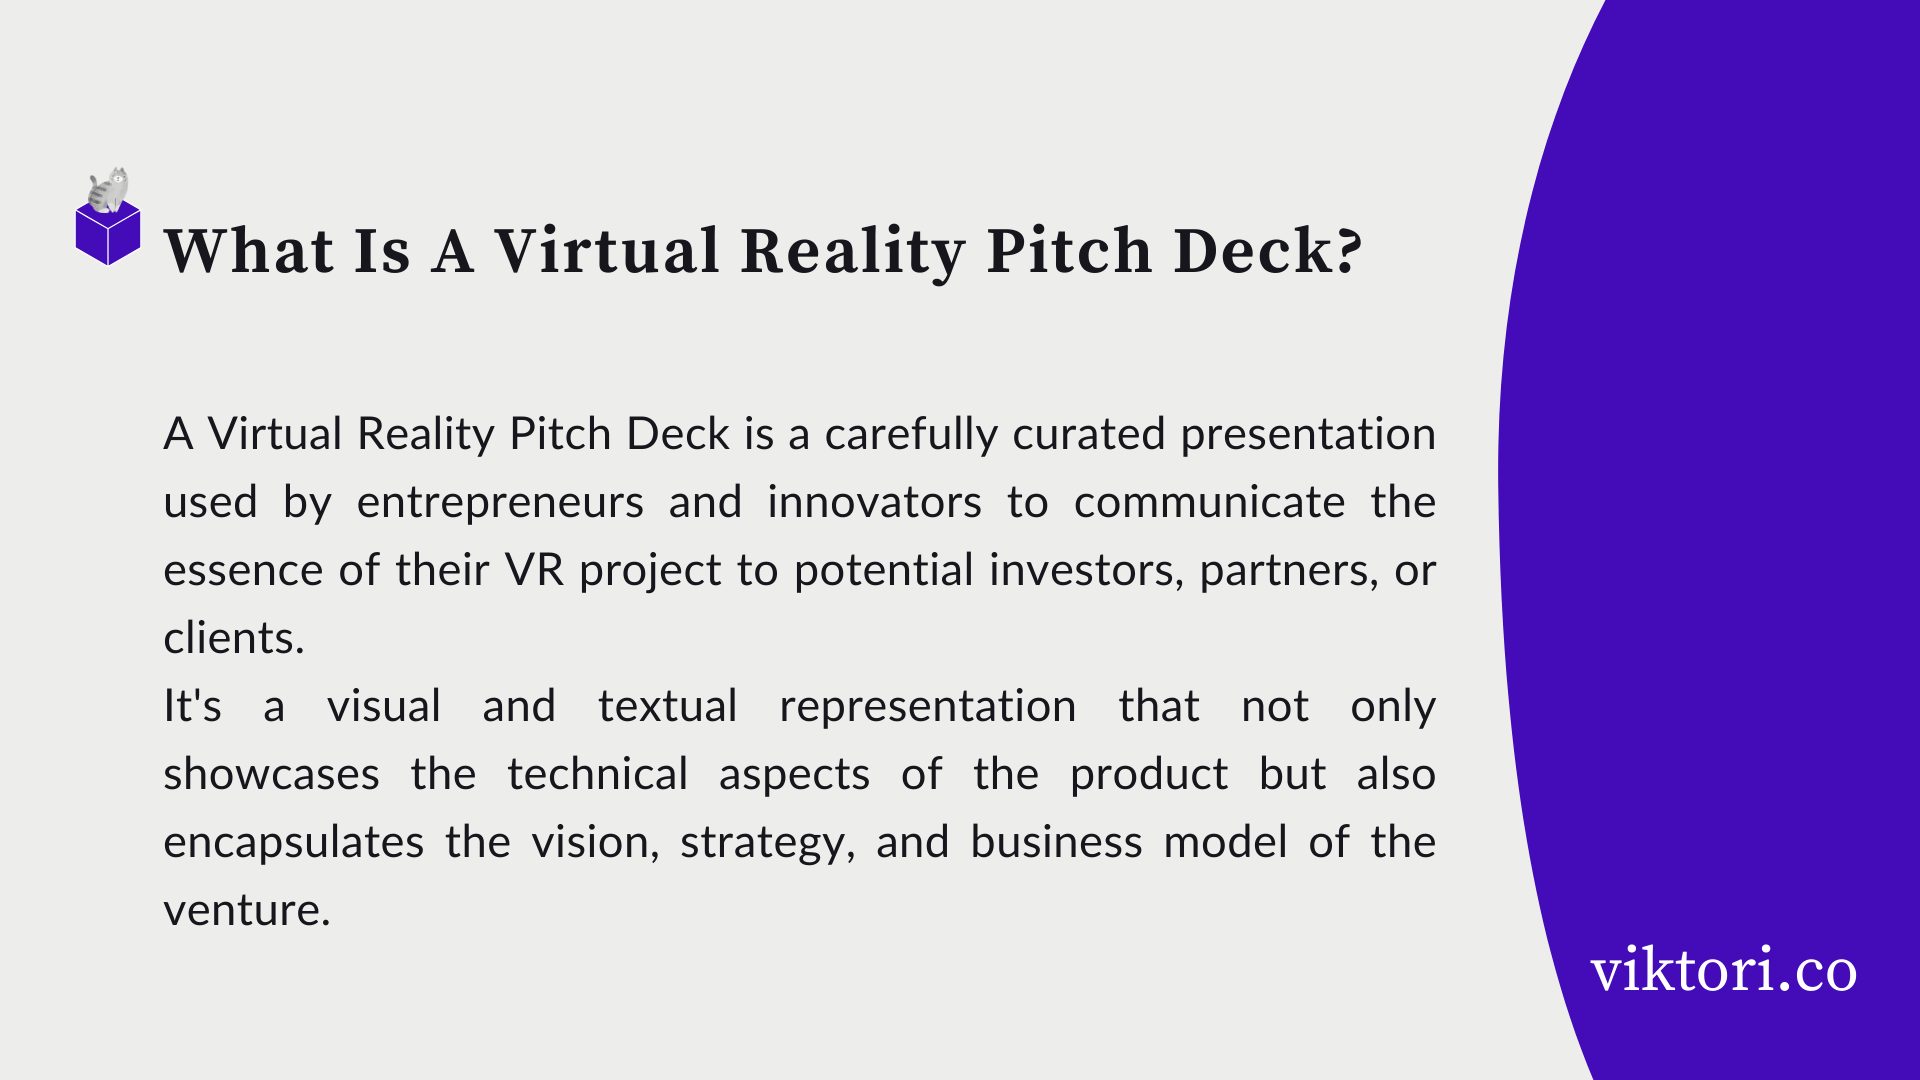 vr pitch deck definition